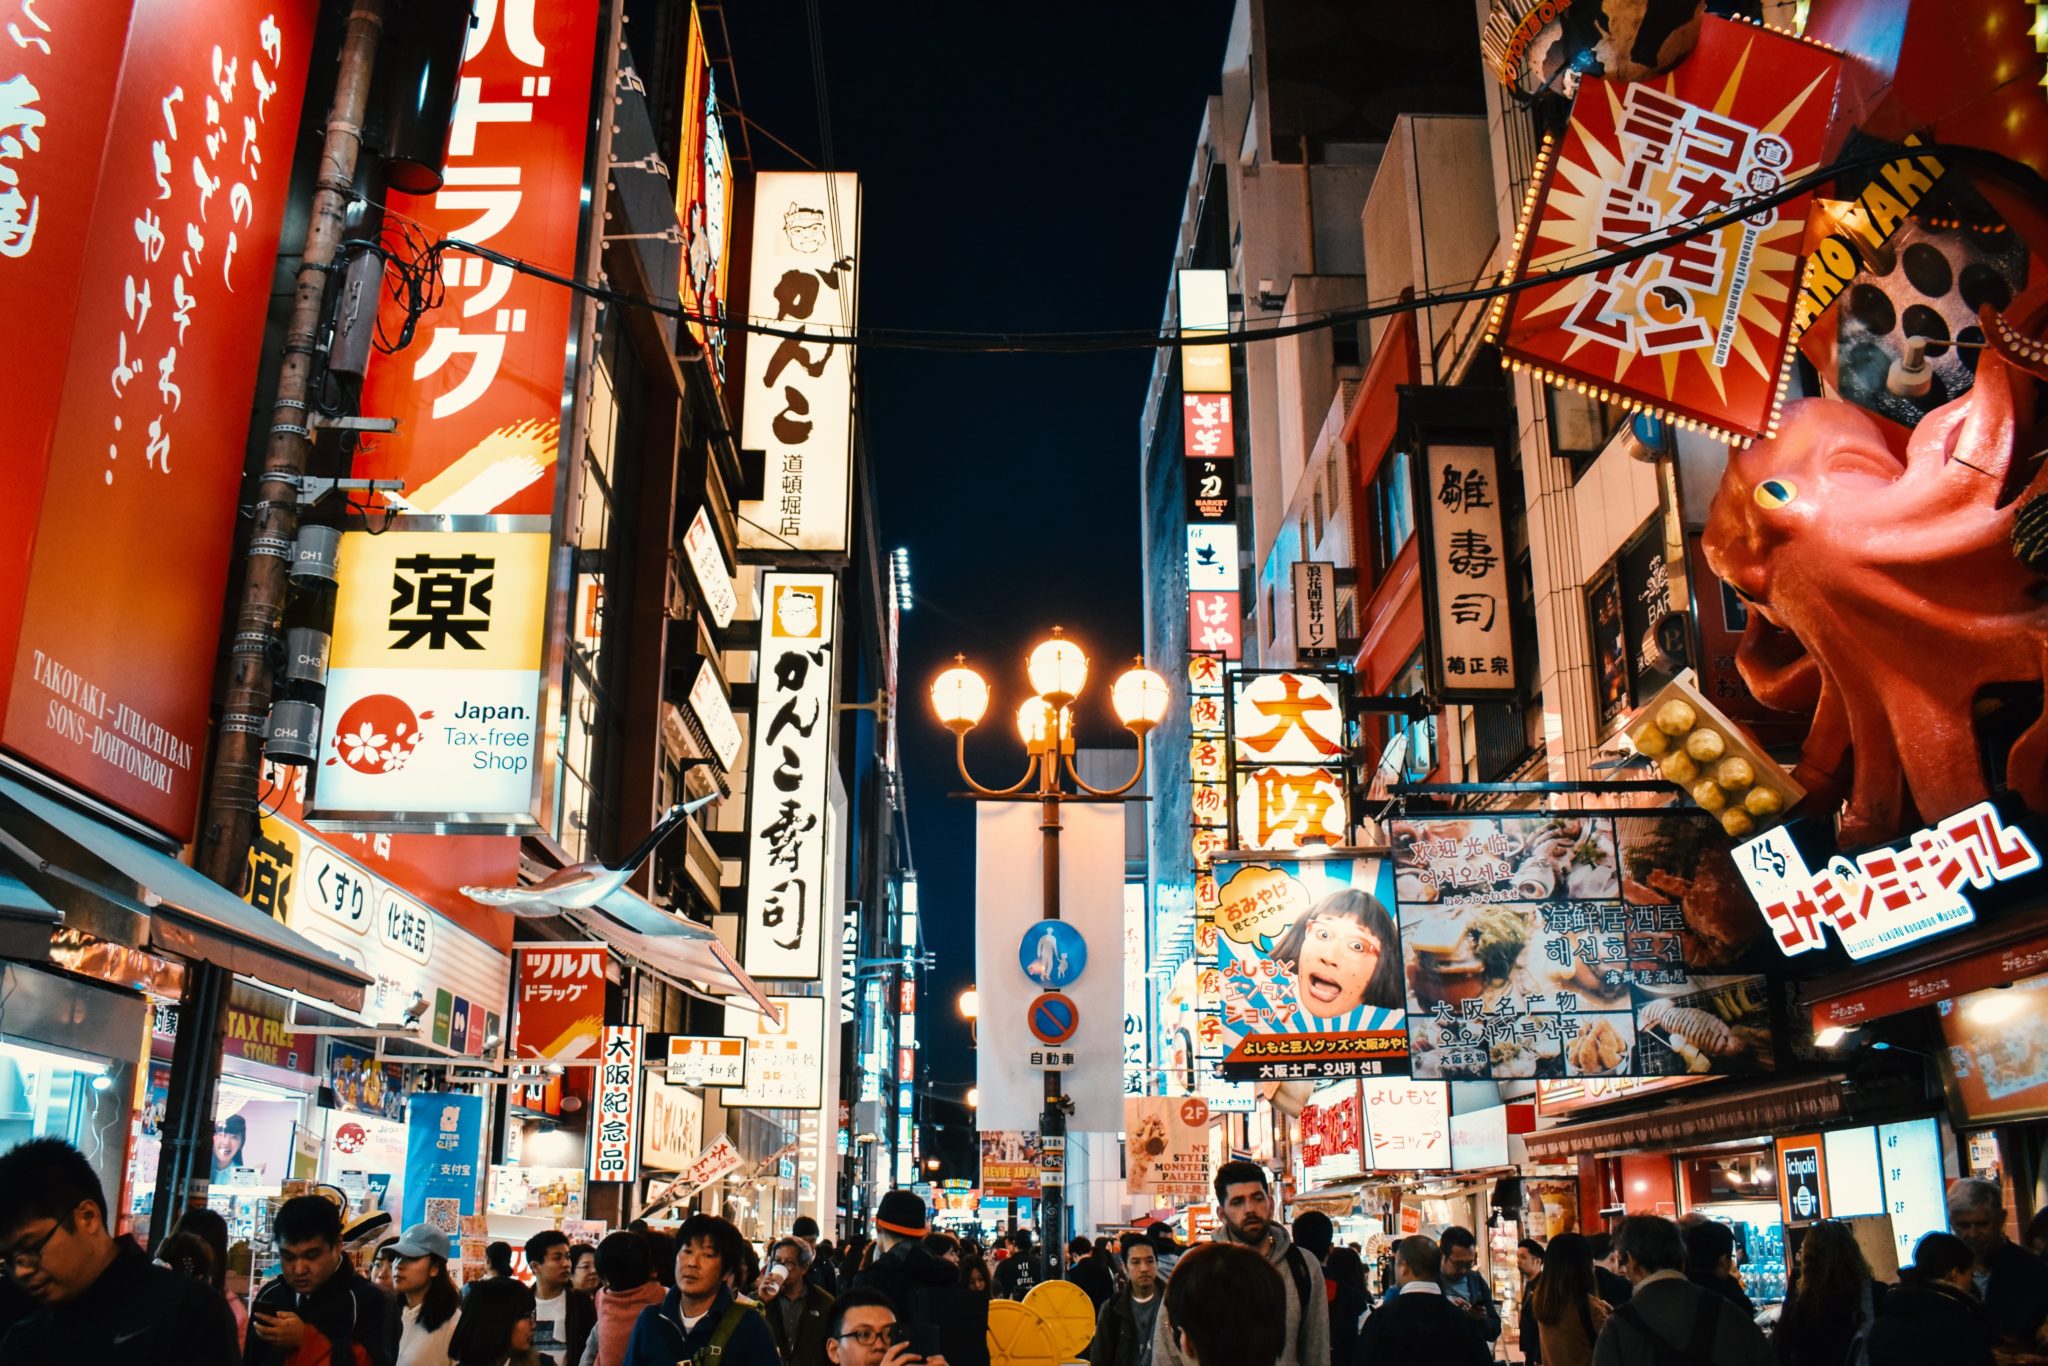 dzielnica neonów, Osaka, tłum ludzi, kolorowe światła, deptak, restauracje, knajpki